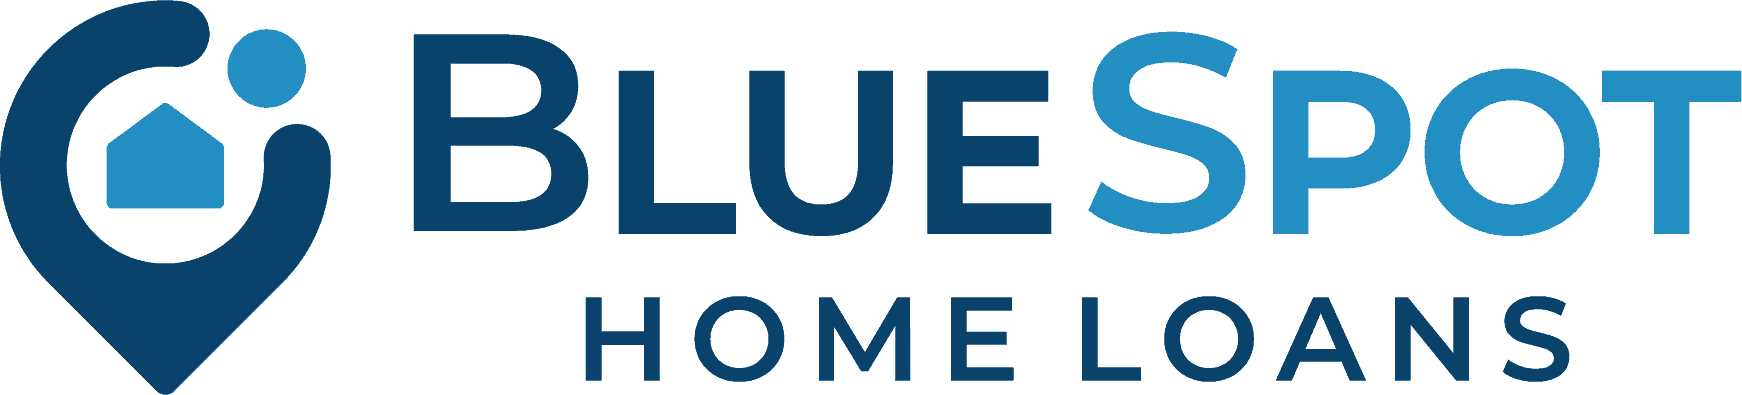 BlueSpot Home Loans company logo